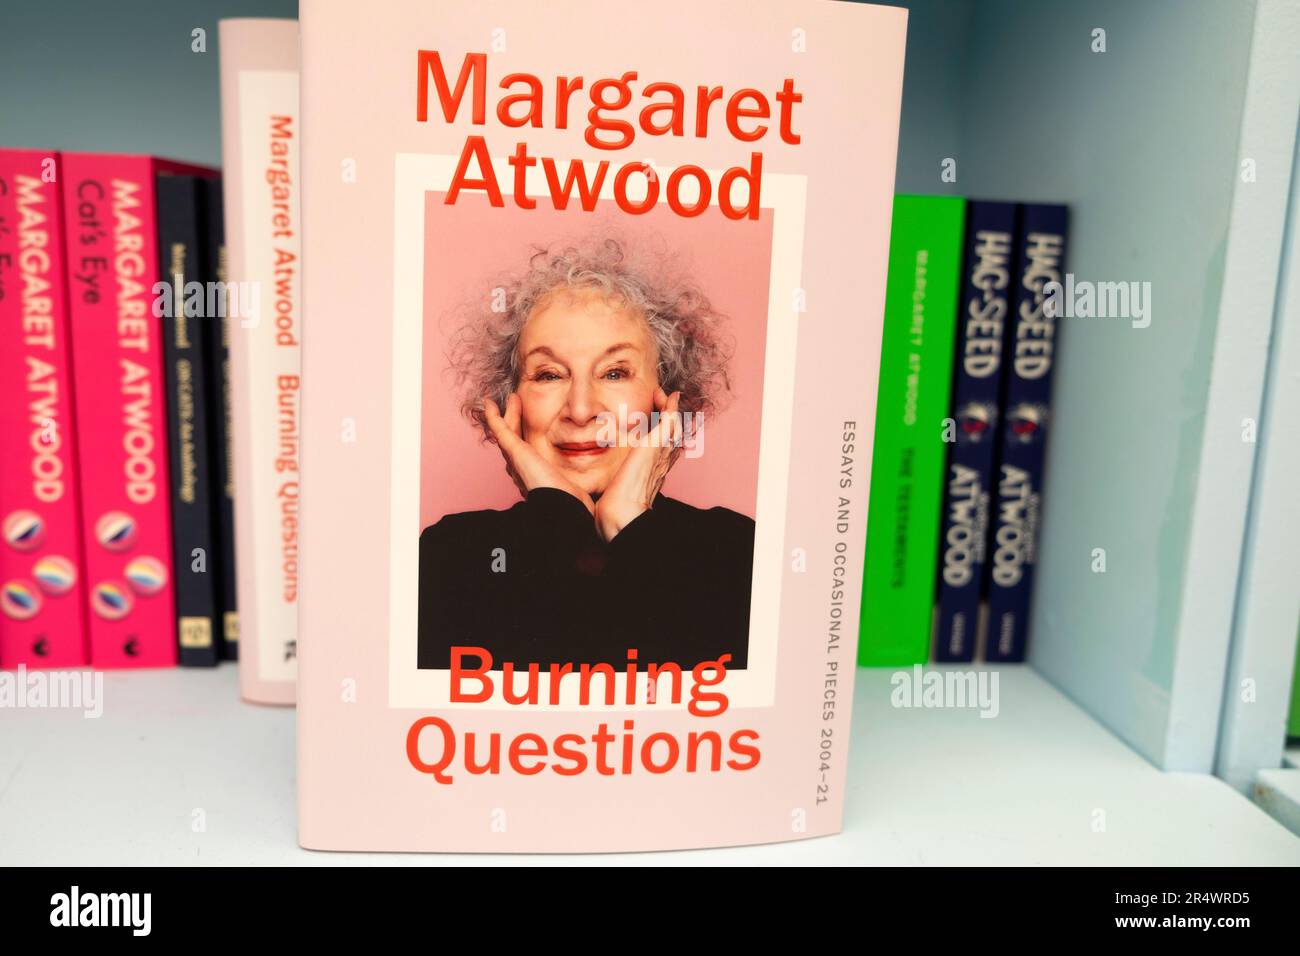 Margaret Atwood livre couverture livres dans la librairie du festival librairie boutique de livres sur place au Hay Festival 2023 Hay-on-Wye pays de Galles Royaume-Uni Grande-Bretagne KATHY DEWITT Banque D'Images